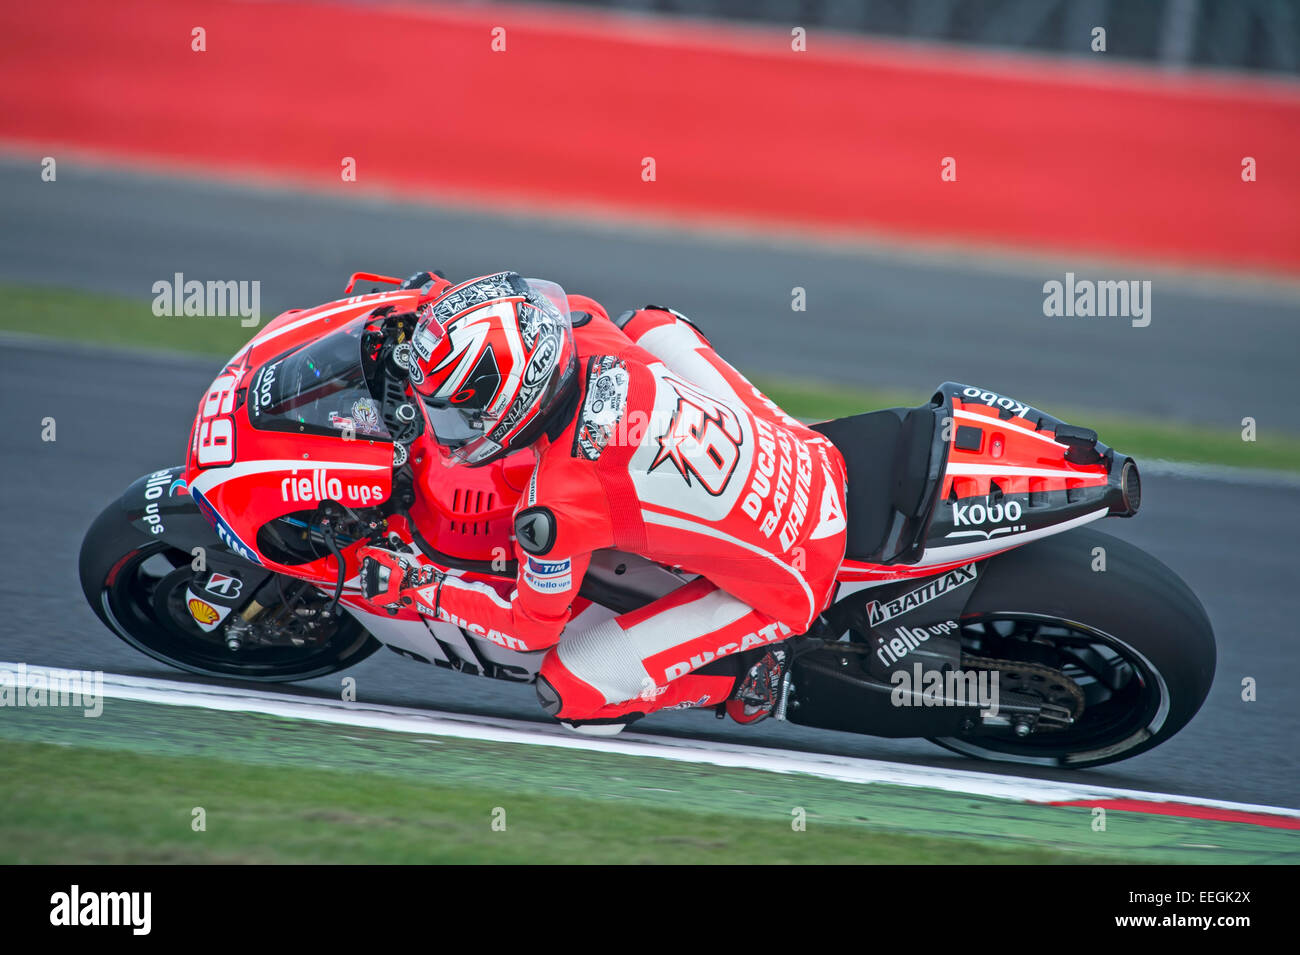 Nicky Hayden, Ducati, 2013 Stockfoto